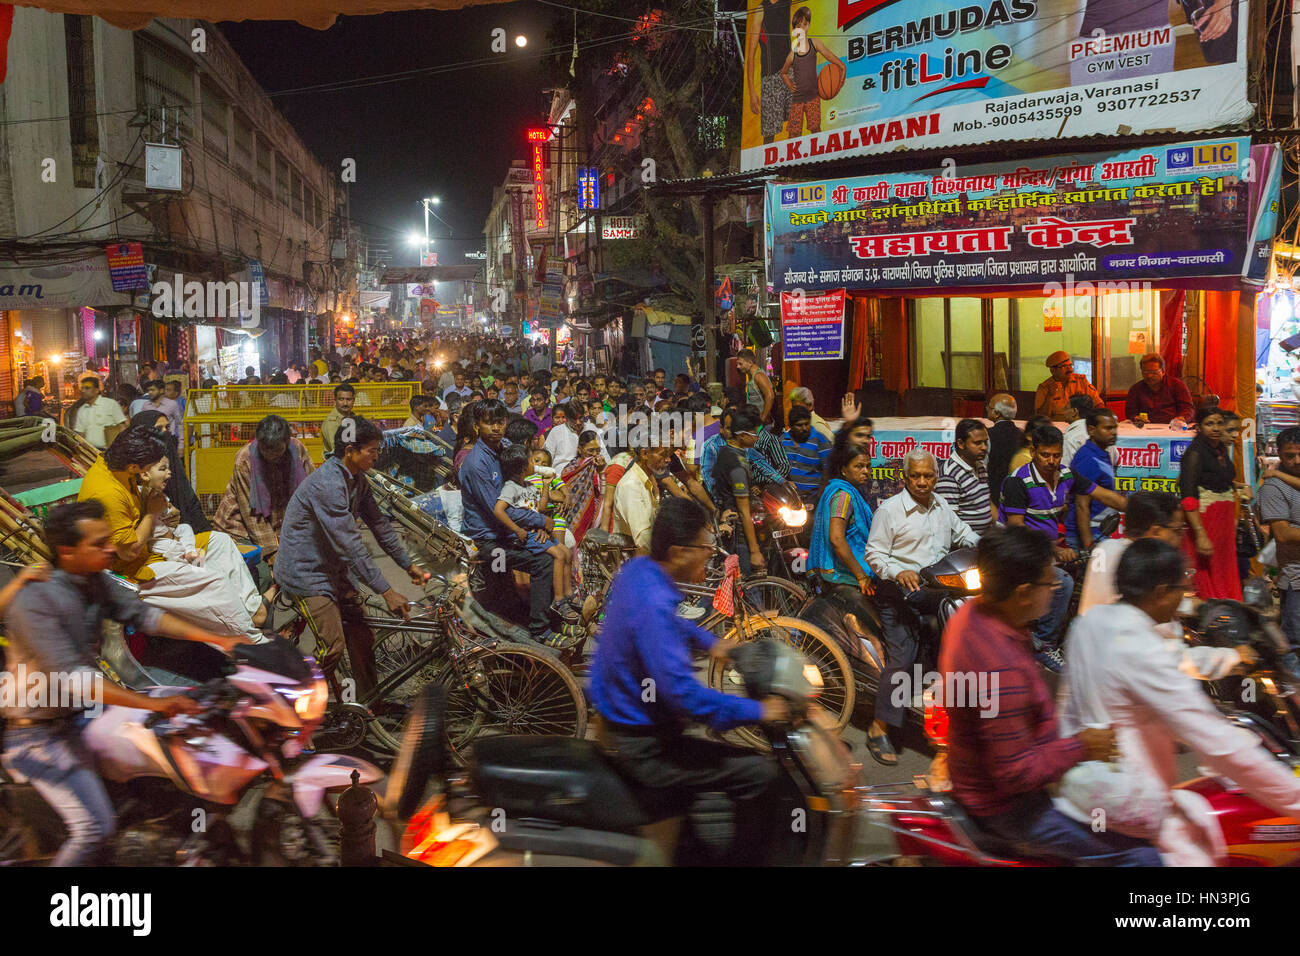 Street scene during rush hour, Varanasi, Uttar Pradesh, India Stock Photo